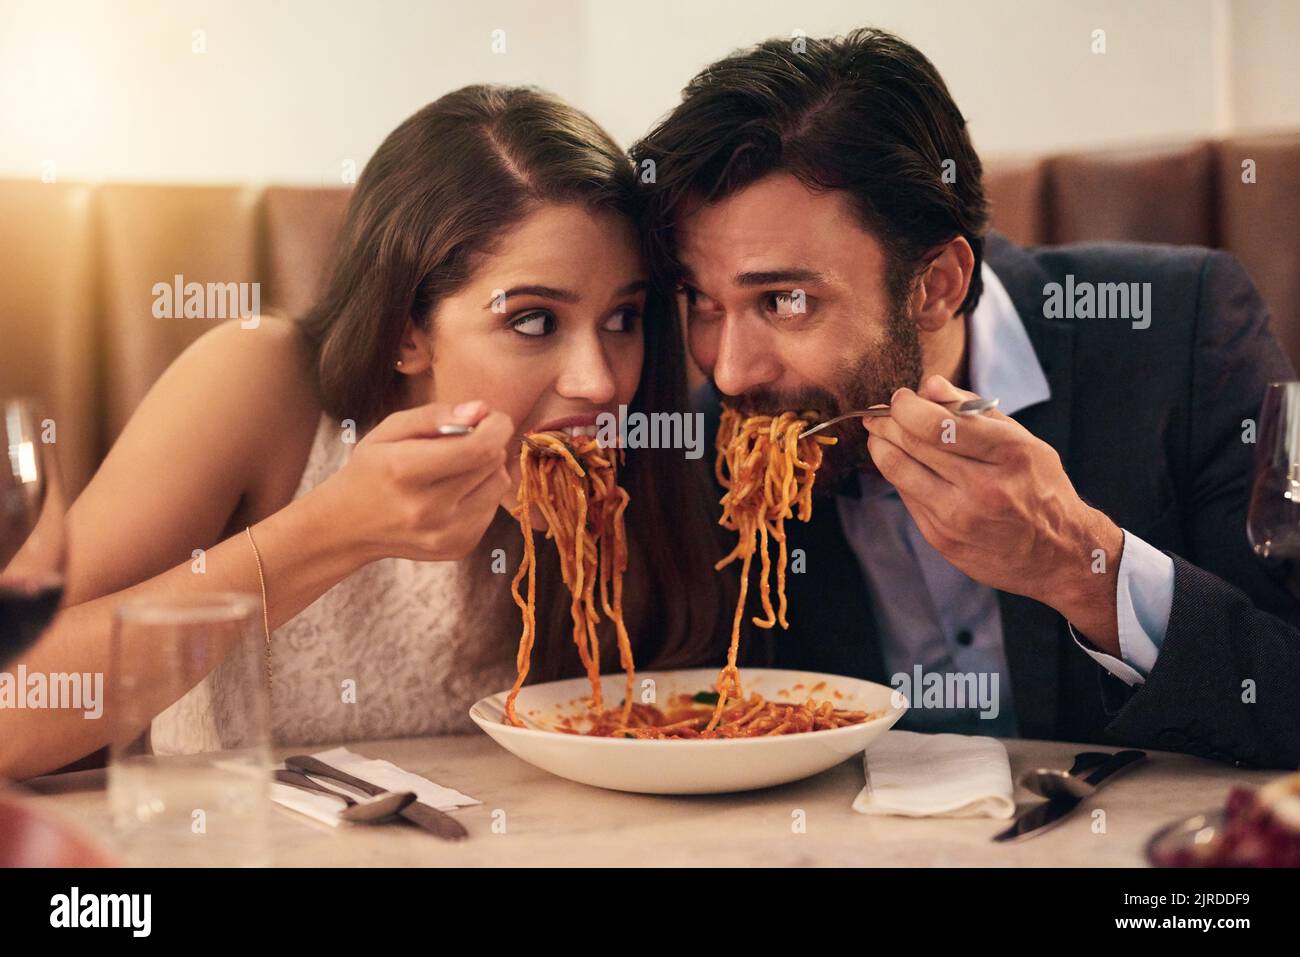 Ein junges Paar teilt sich einen Teller mit Spaghetti während eines romantischen Abendessens in einem Restaurant. Stockfoto